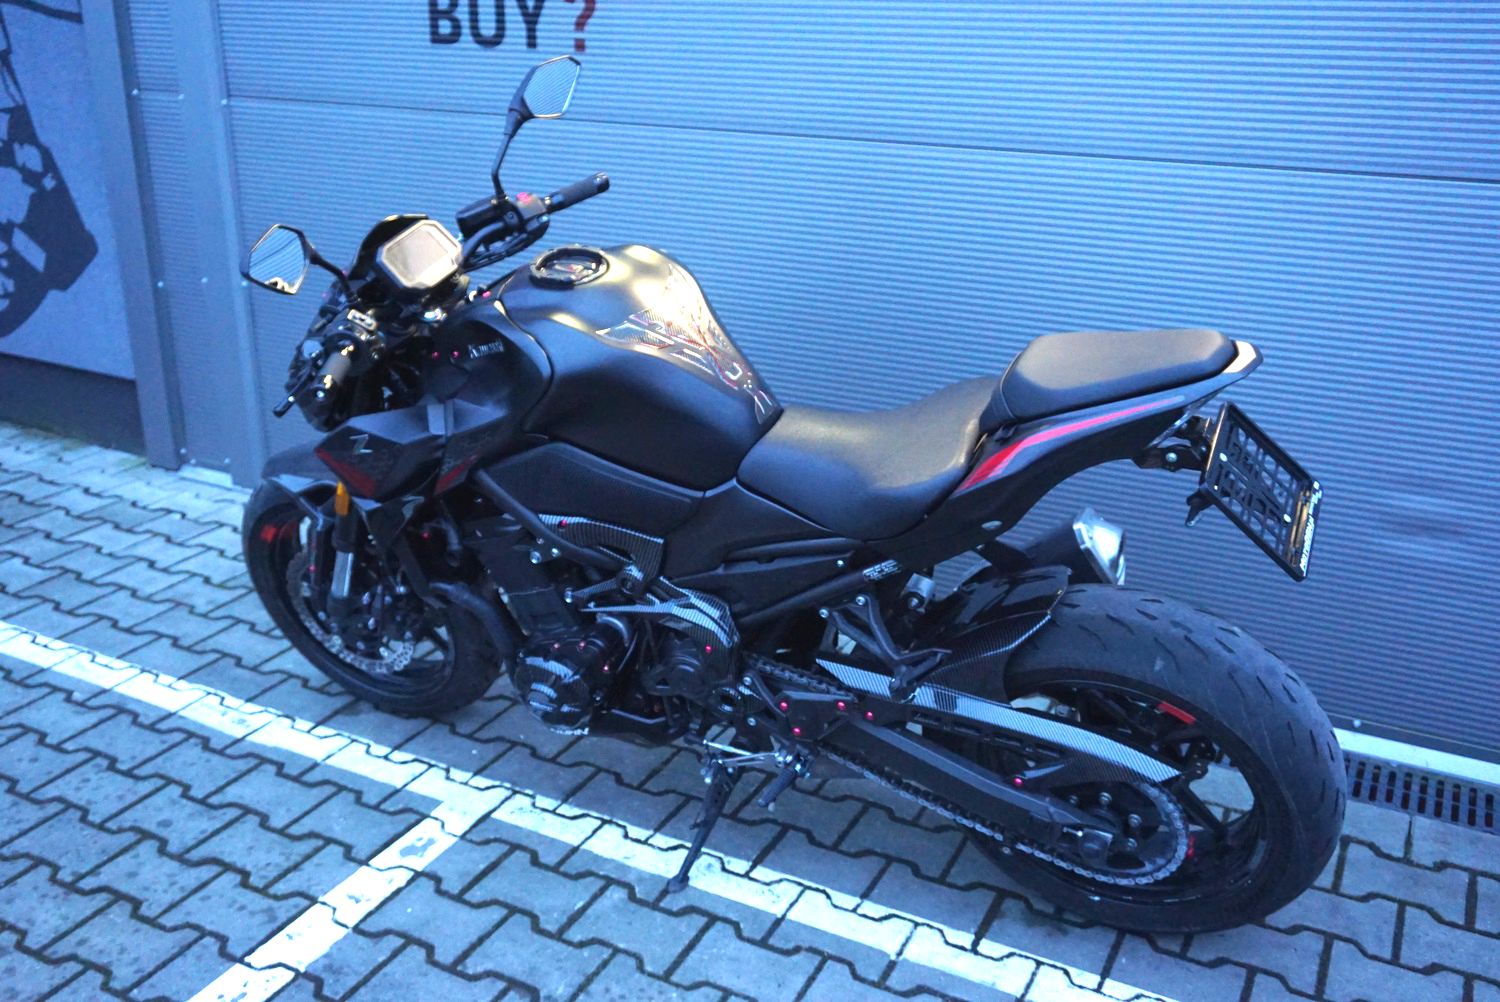 Kawasaki Z900 35 kW A2